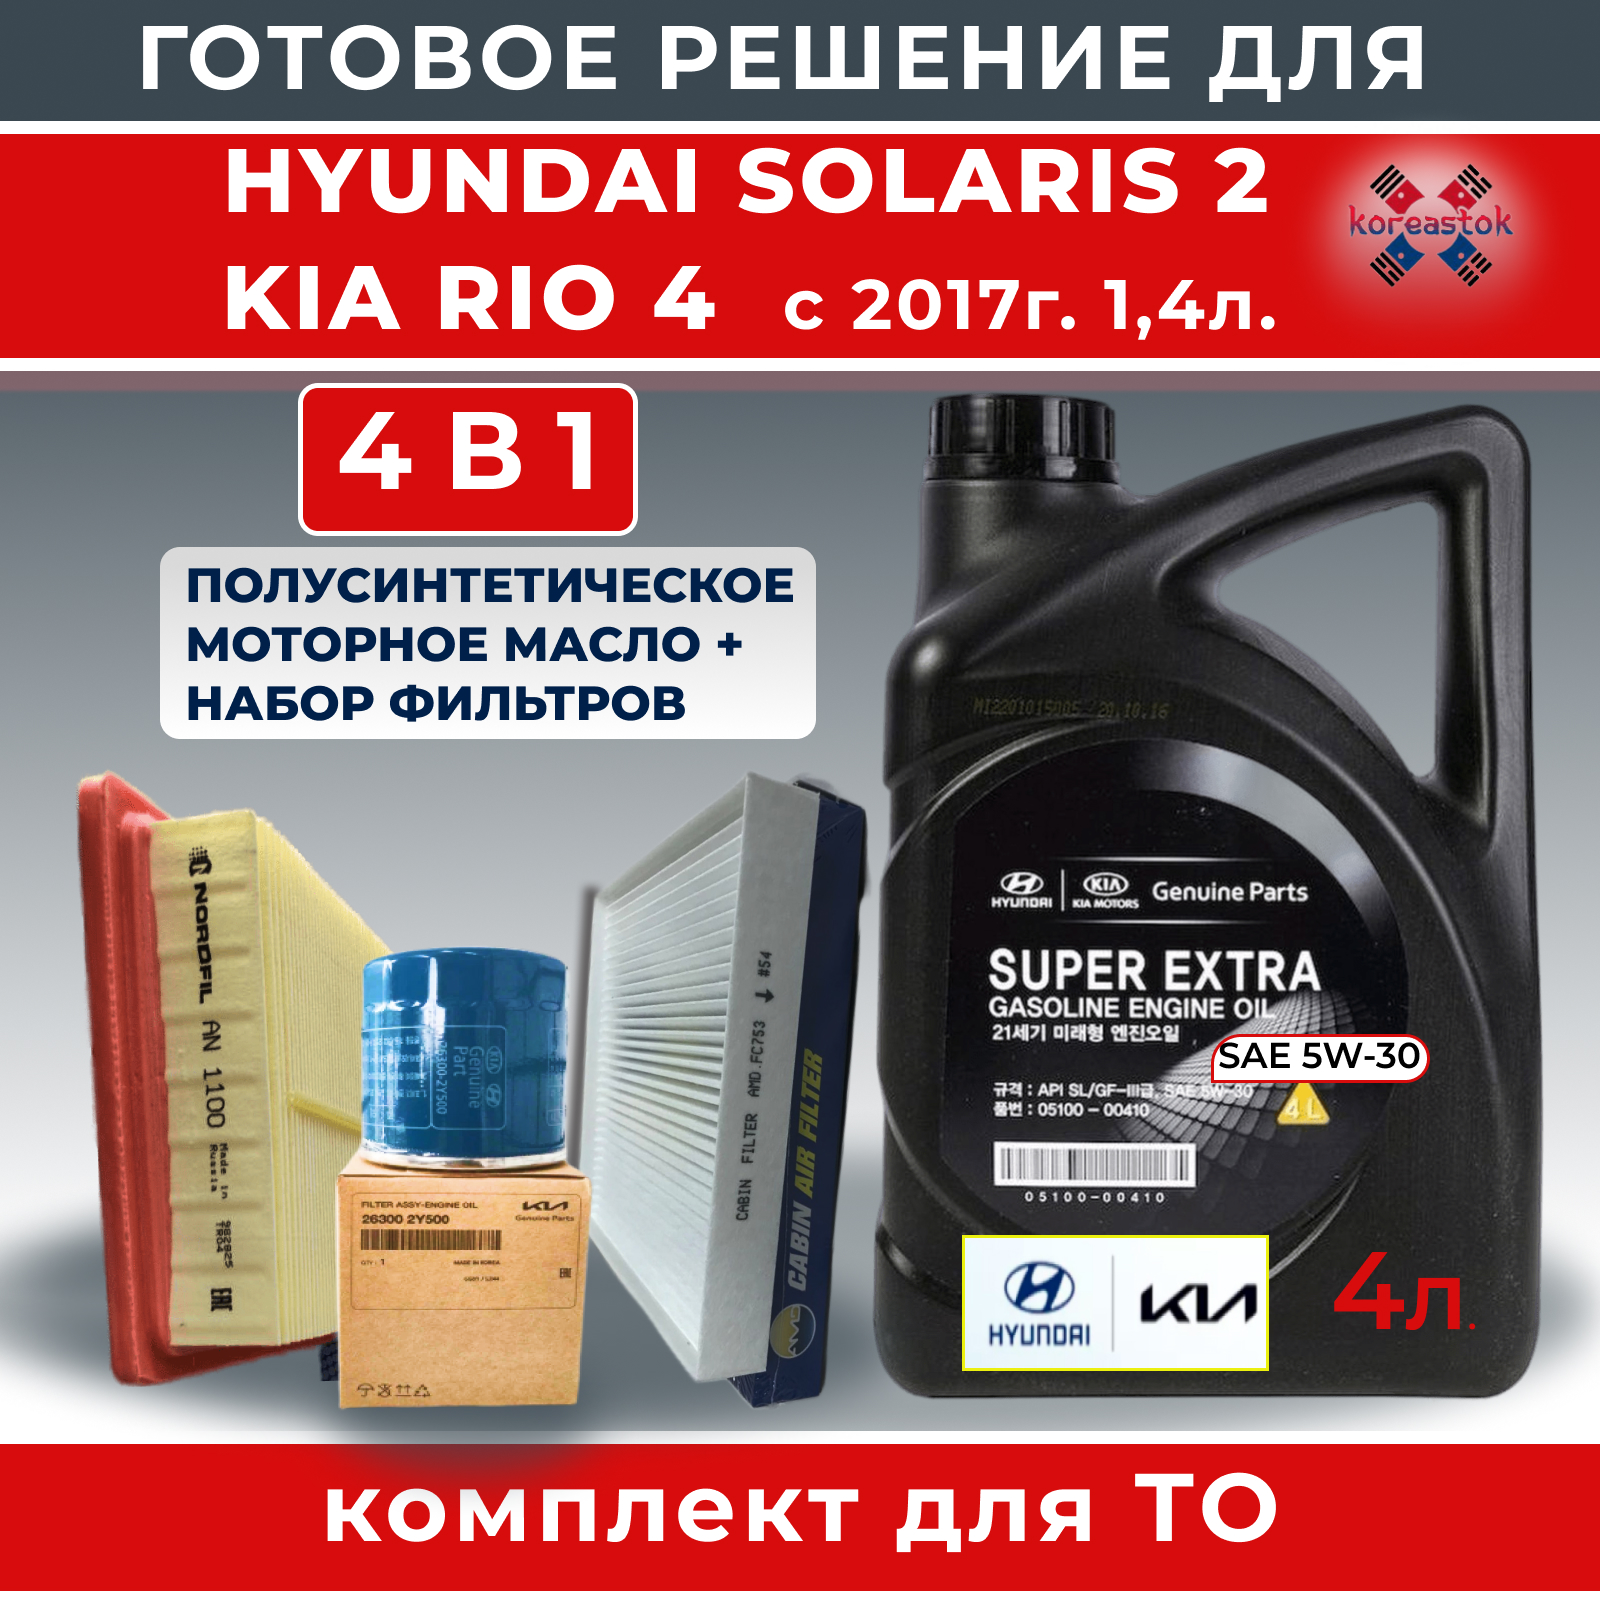 Комплект для замены масла в двигателе,Koreastok 3 фильтра и масло 4л. для KIA/Hyundai